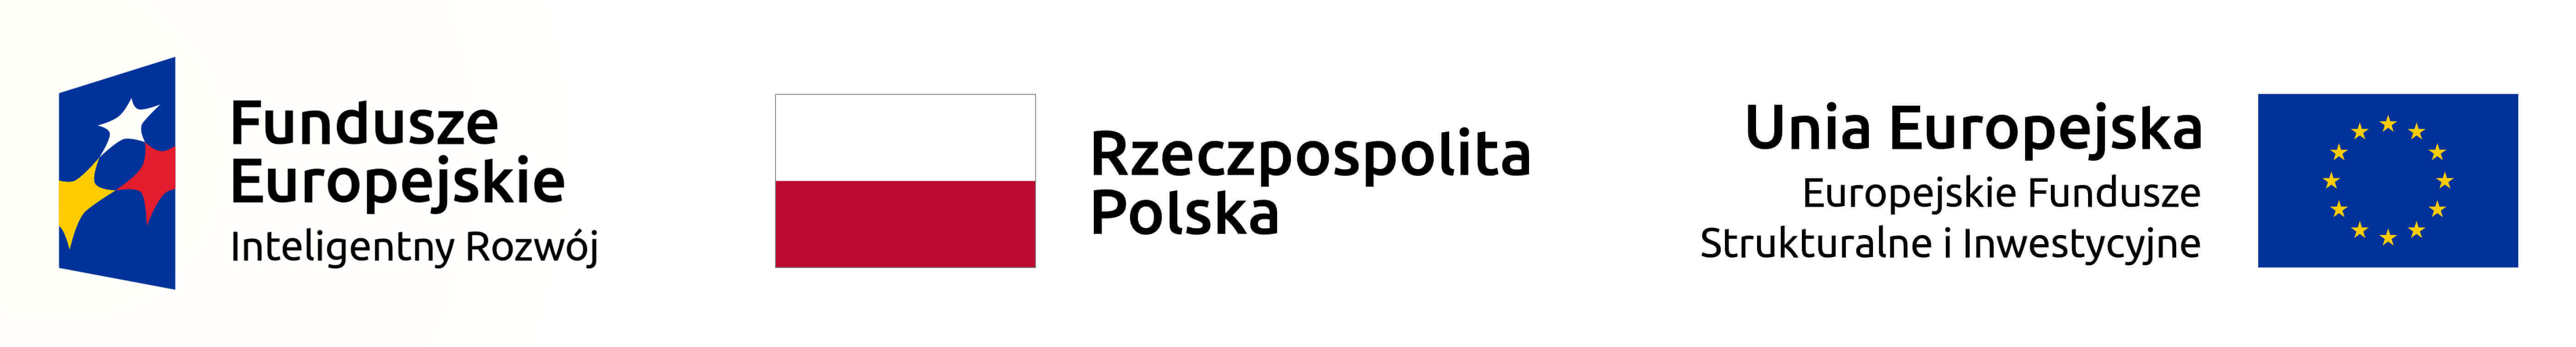 Fundusze Europejskie | Rzeczpospolita Polska | Unia Europejska